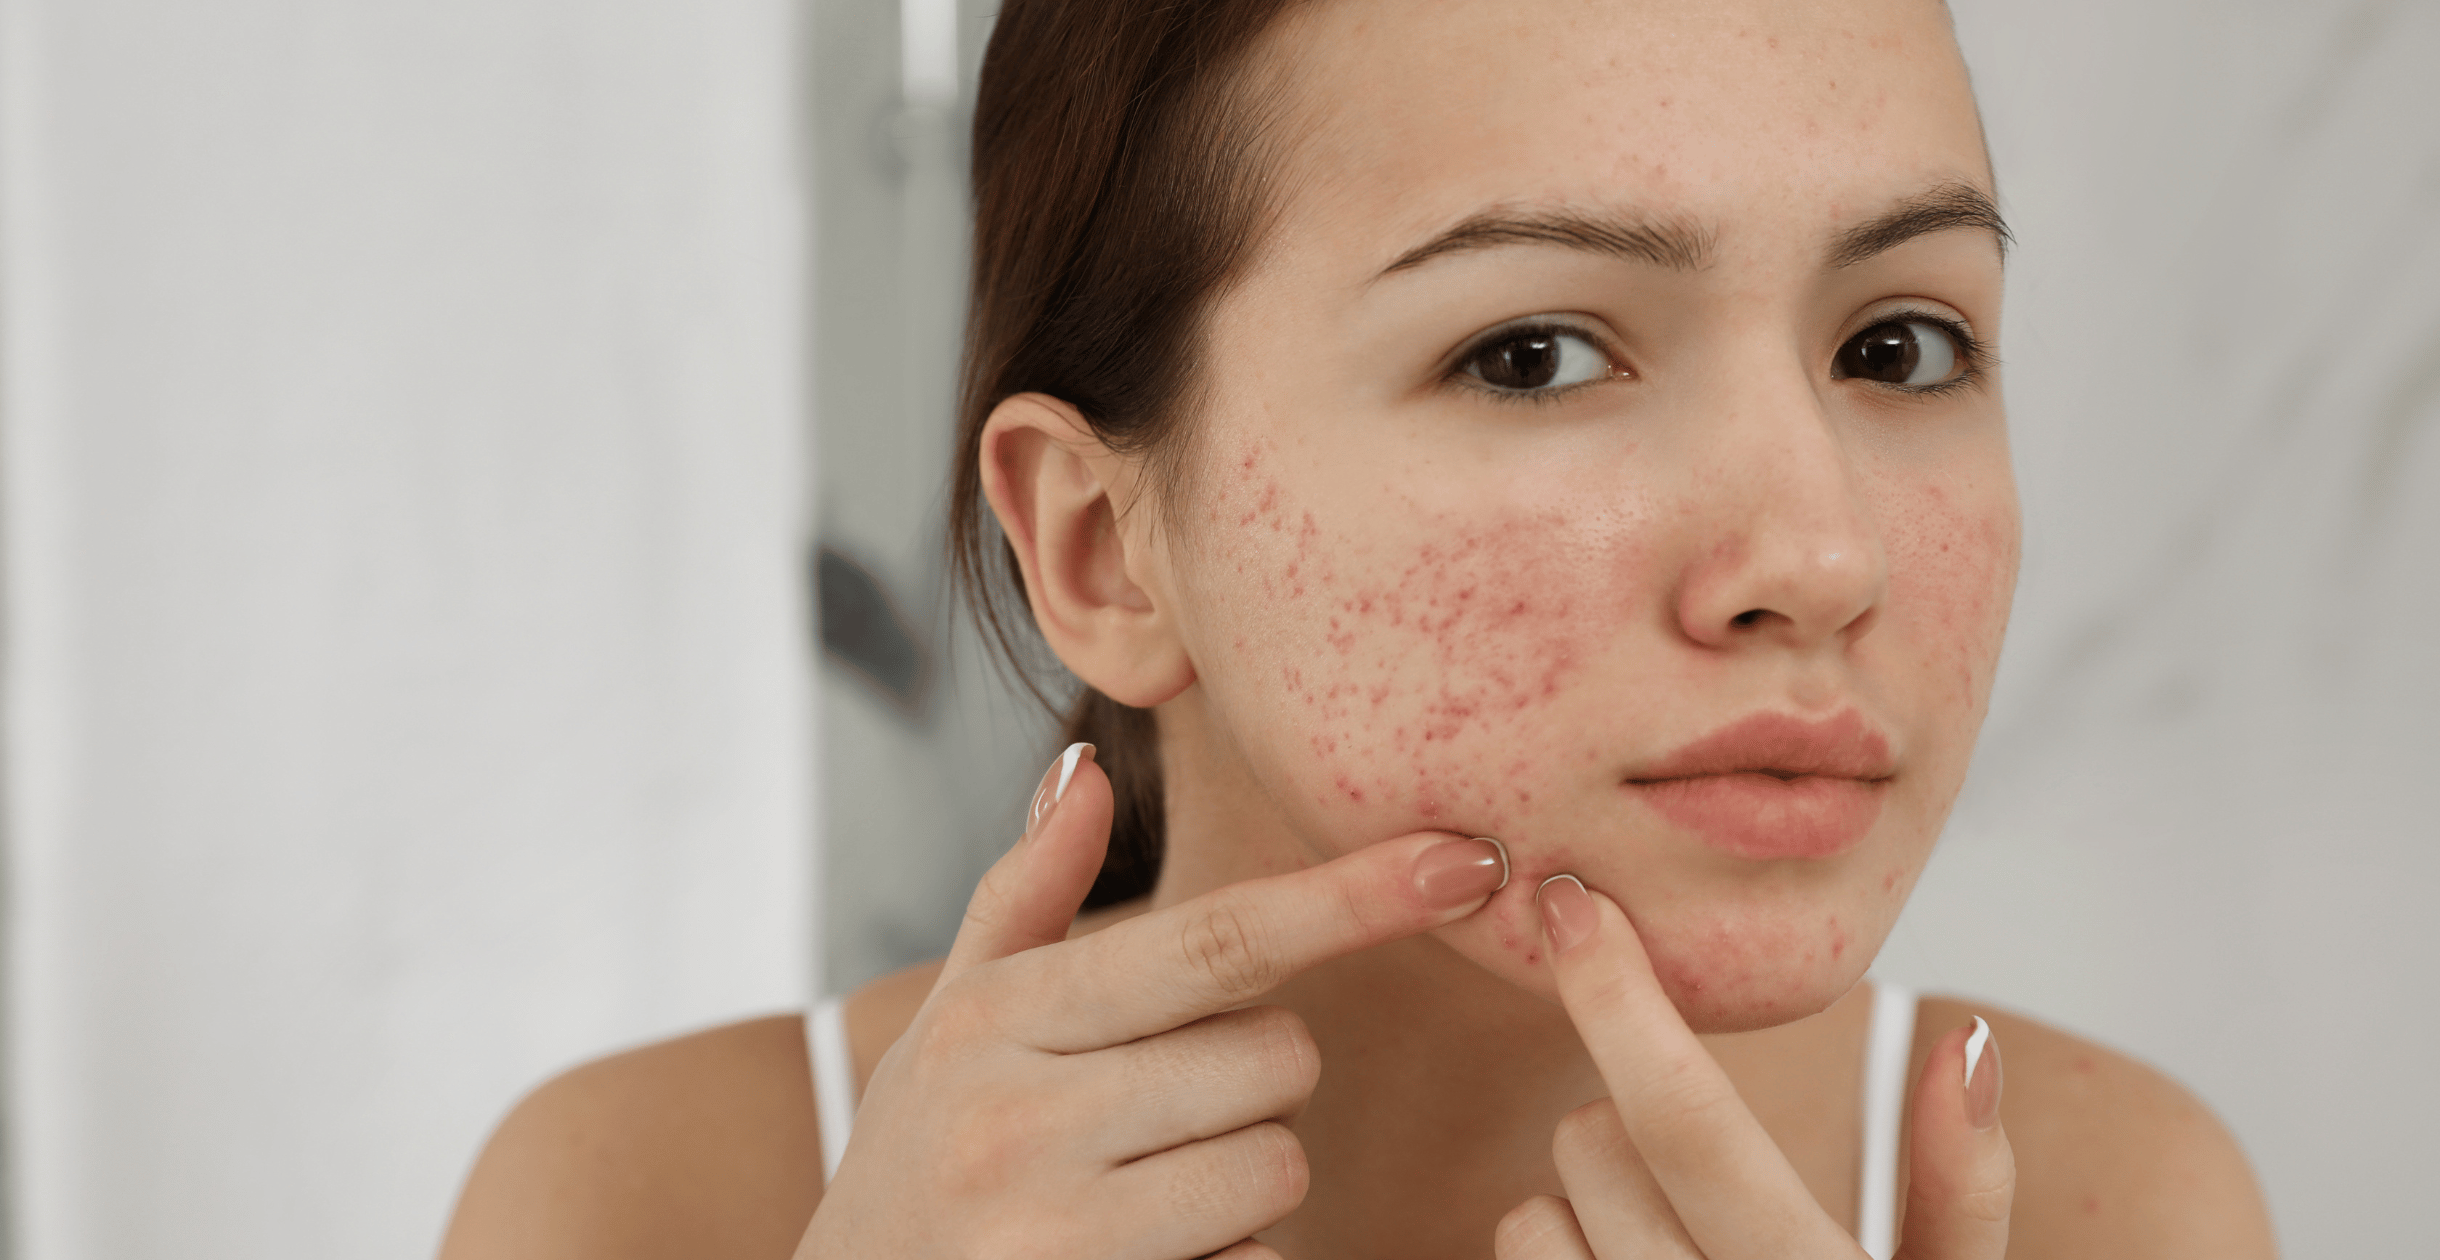 Teenage acne vs adult acne